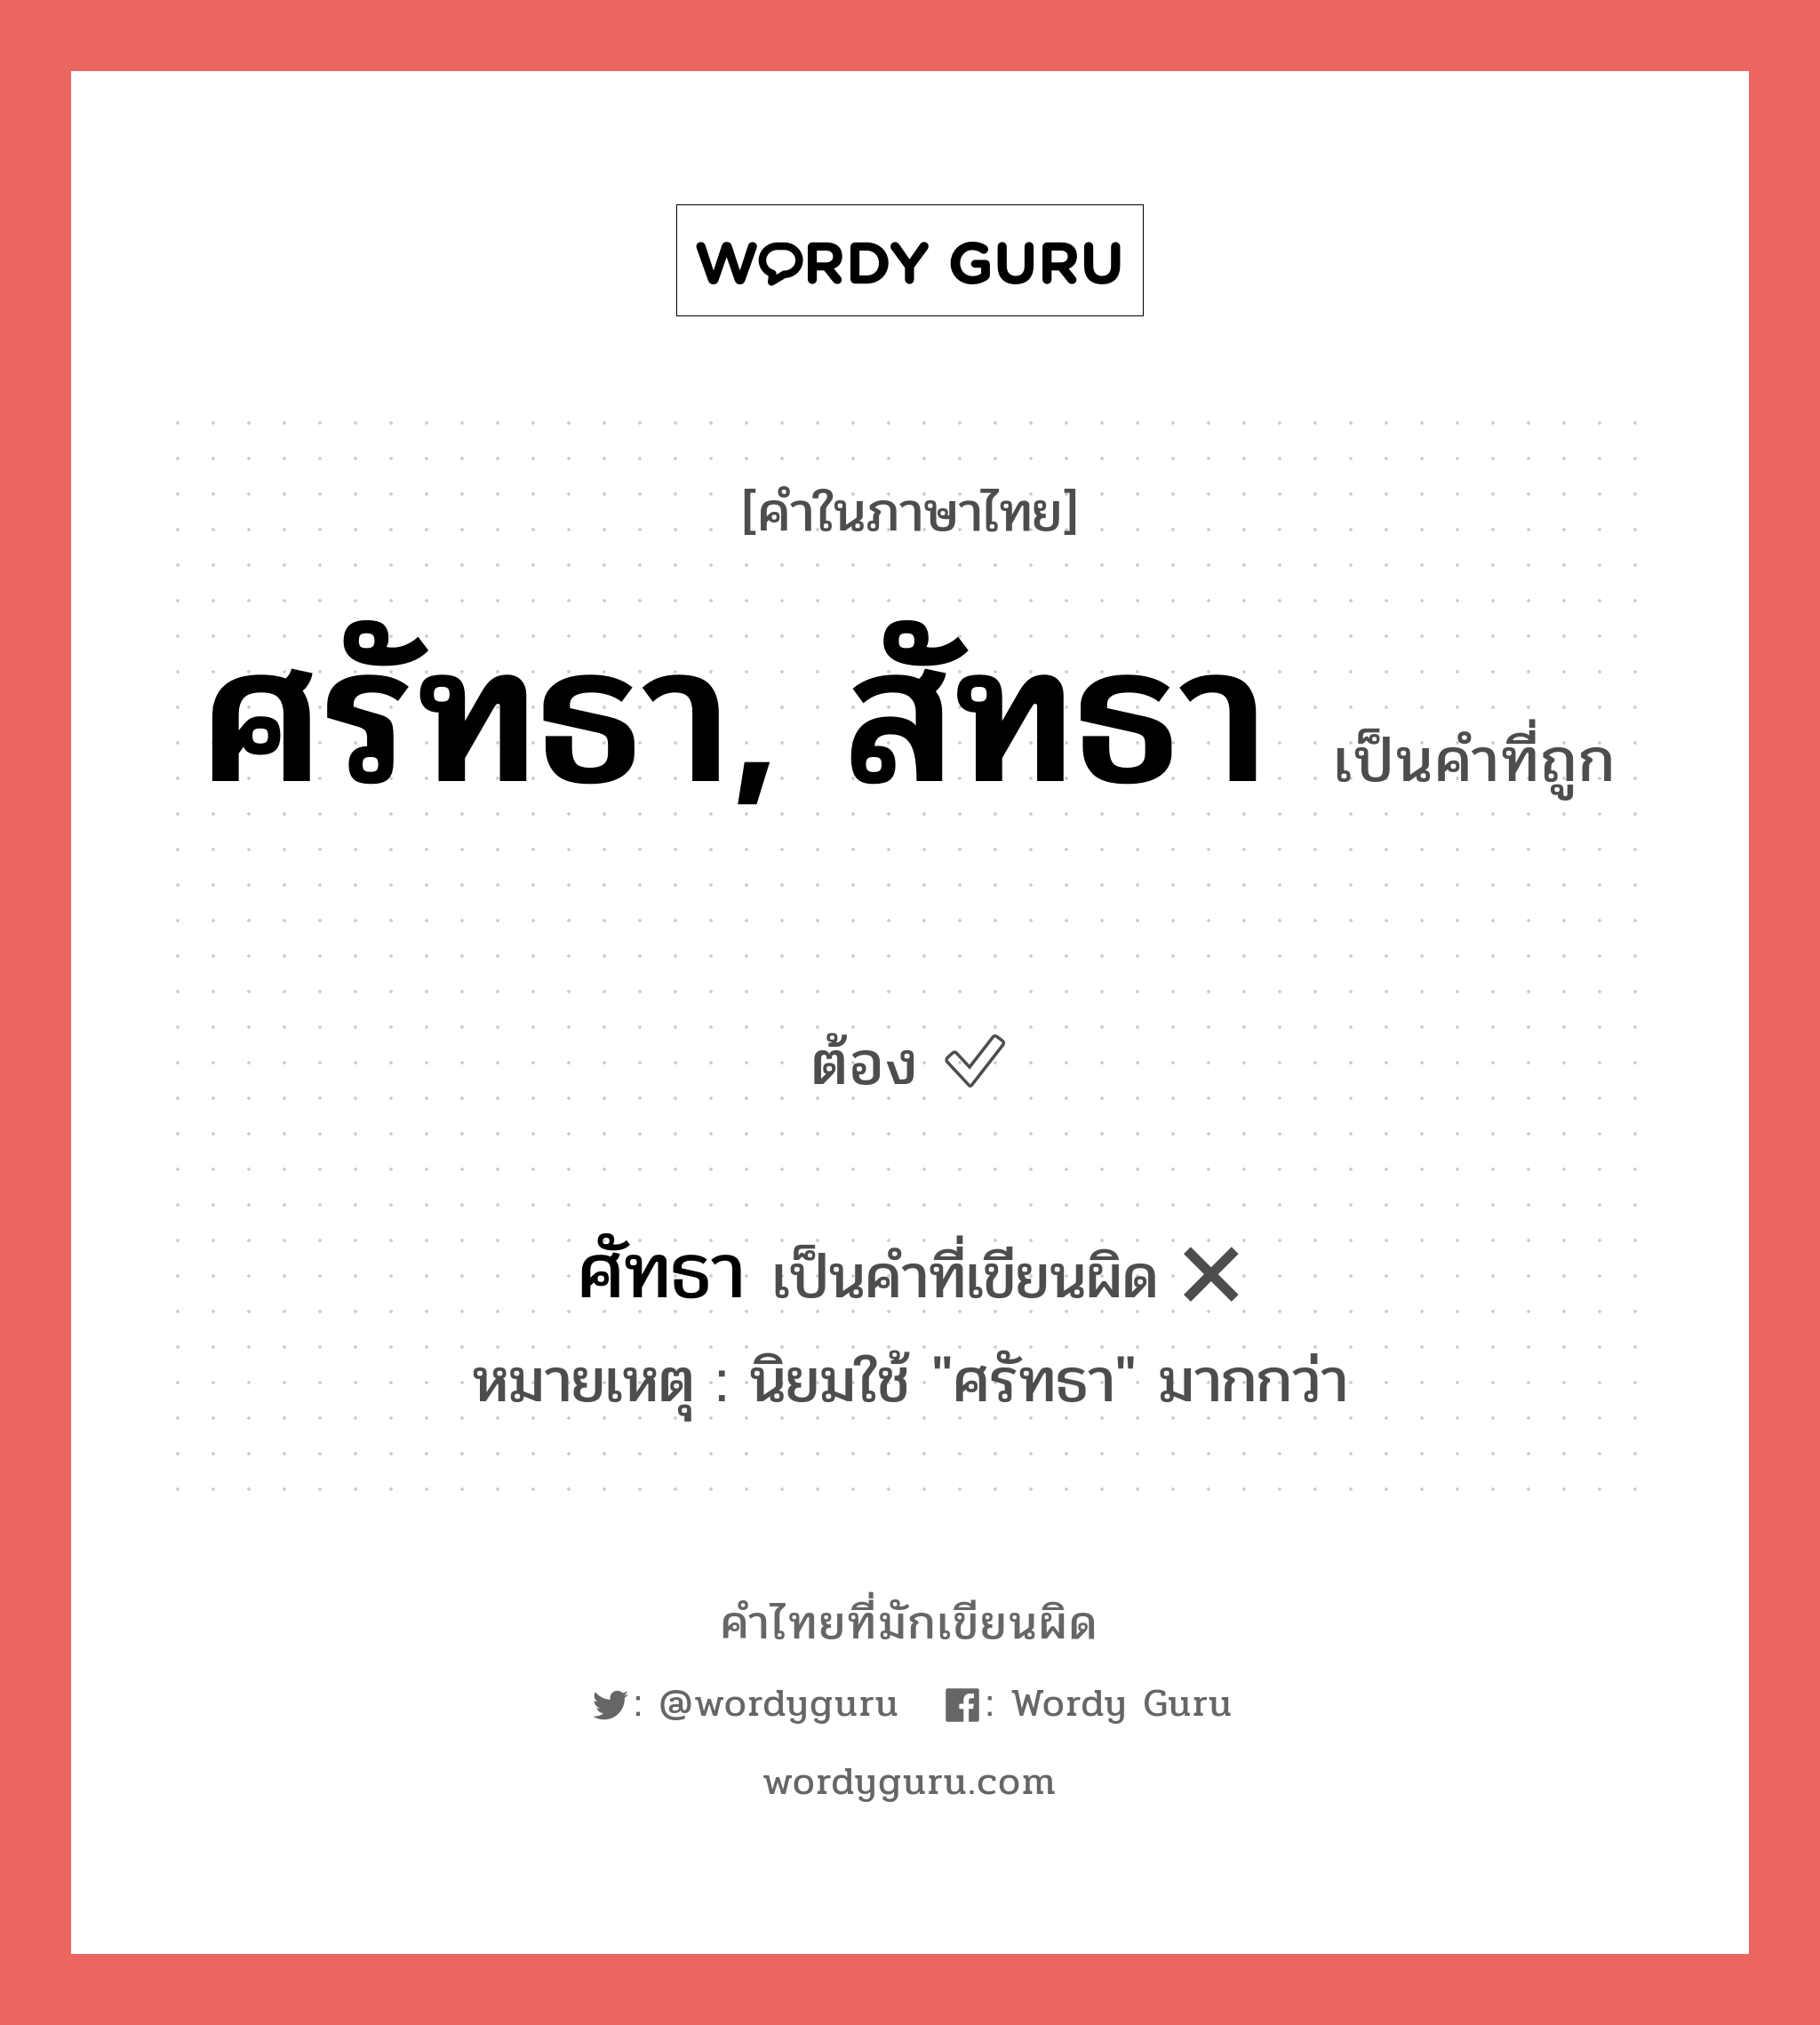 ศรัทธา, สัทธา หรือ ศัทธา คำไหนเขียนถูก?, คำในภาษาไทยที่มักเขียนผิด ศรัทธา, สัทธา คำที่ผิด ❌ ศัทธา หมายเหตุ นิยมใช้ "ศรัทธา" มากกว่า